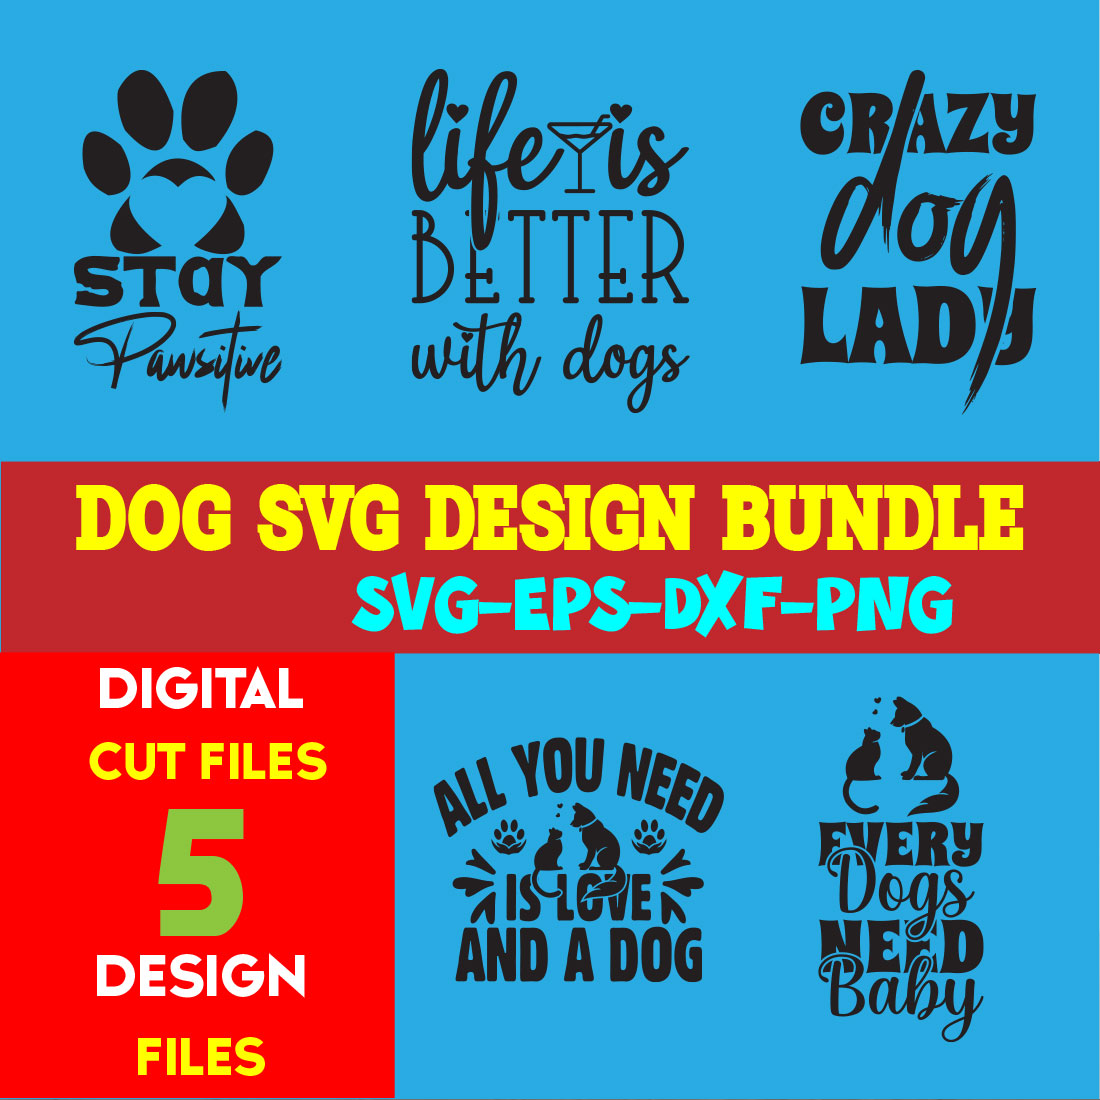 Dog T-shirt Design Bundle Volume-02 cover image.